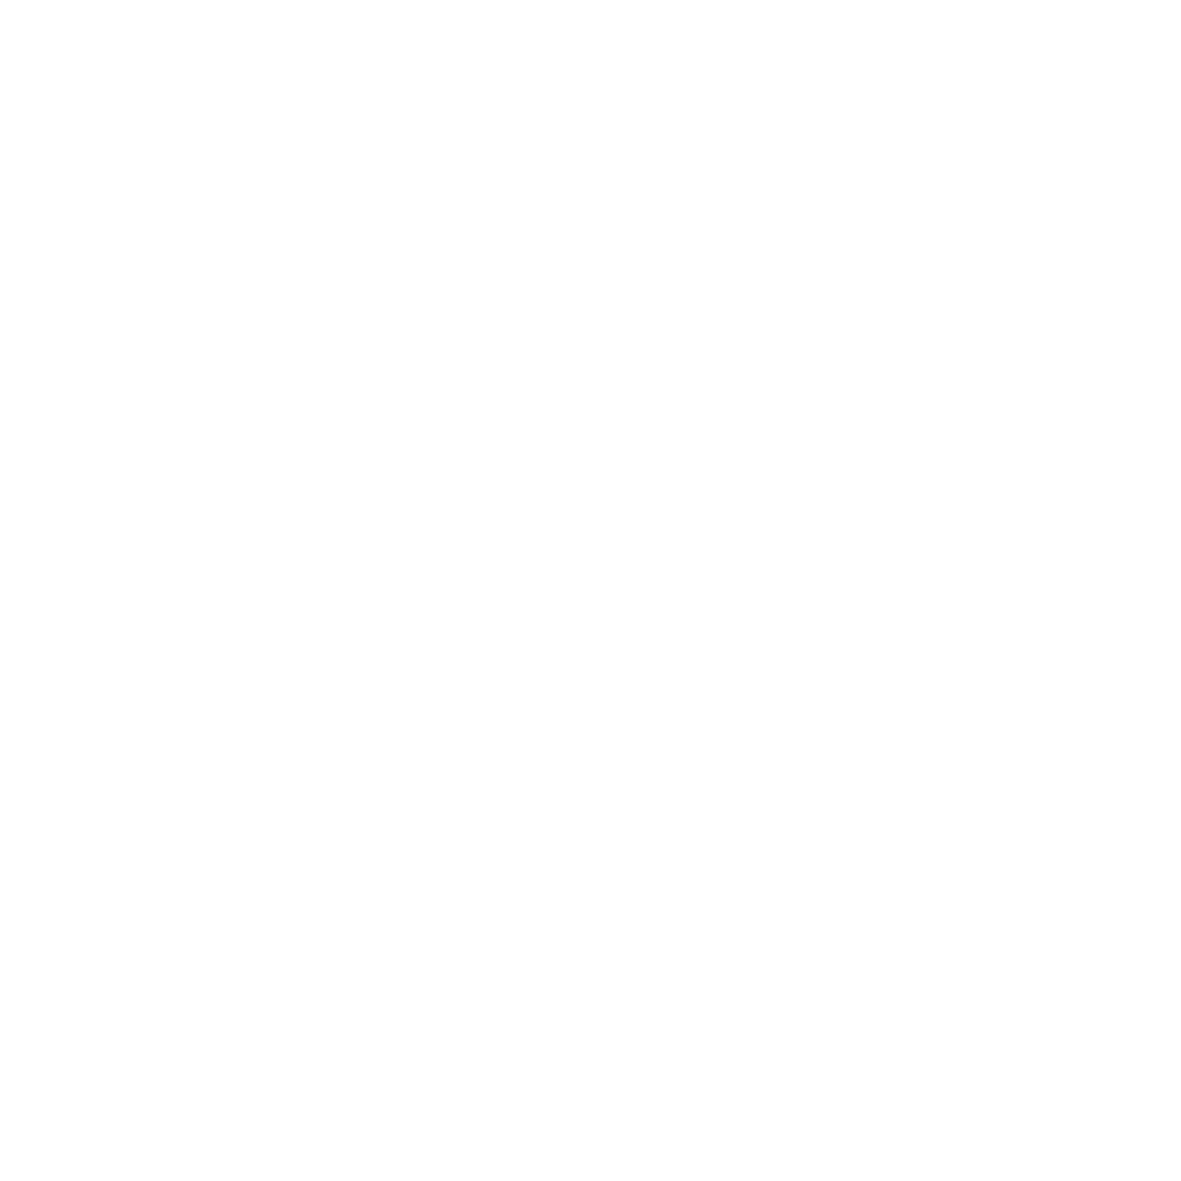 Howling Husky Adventures logo